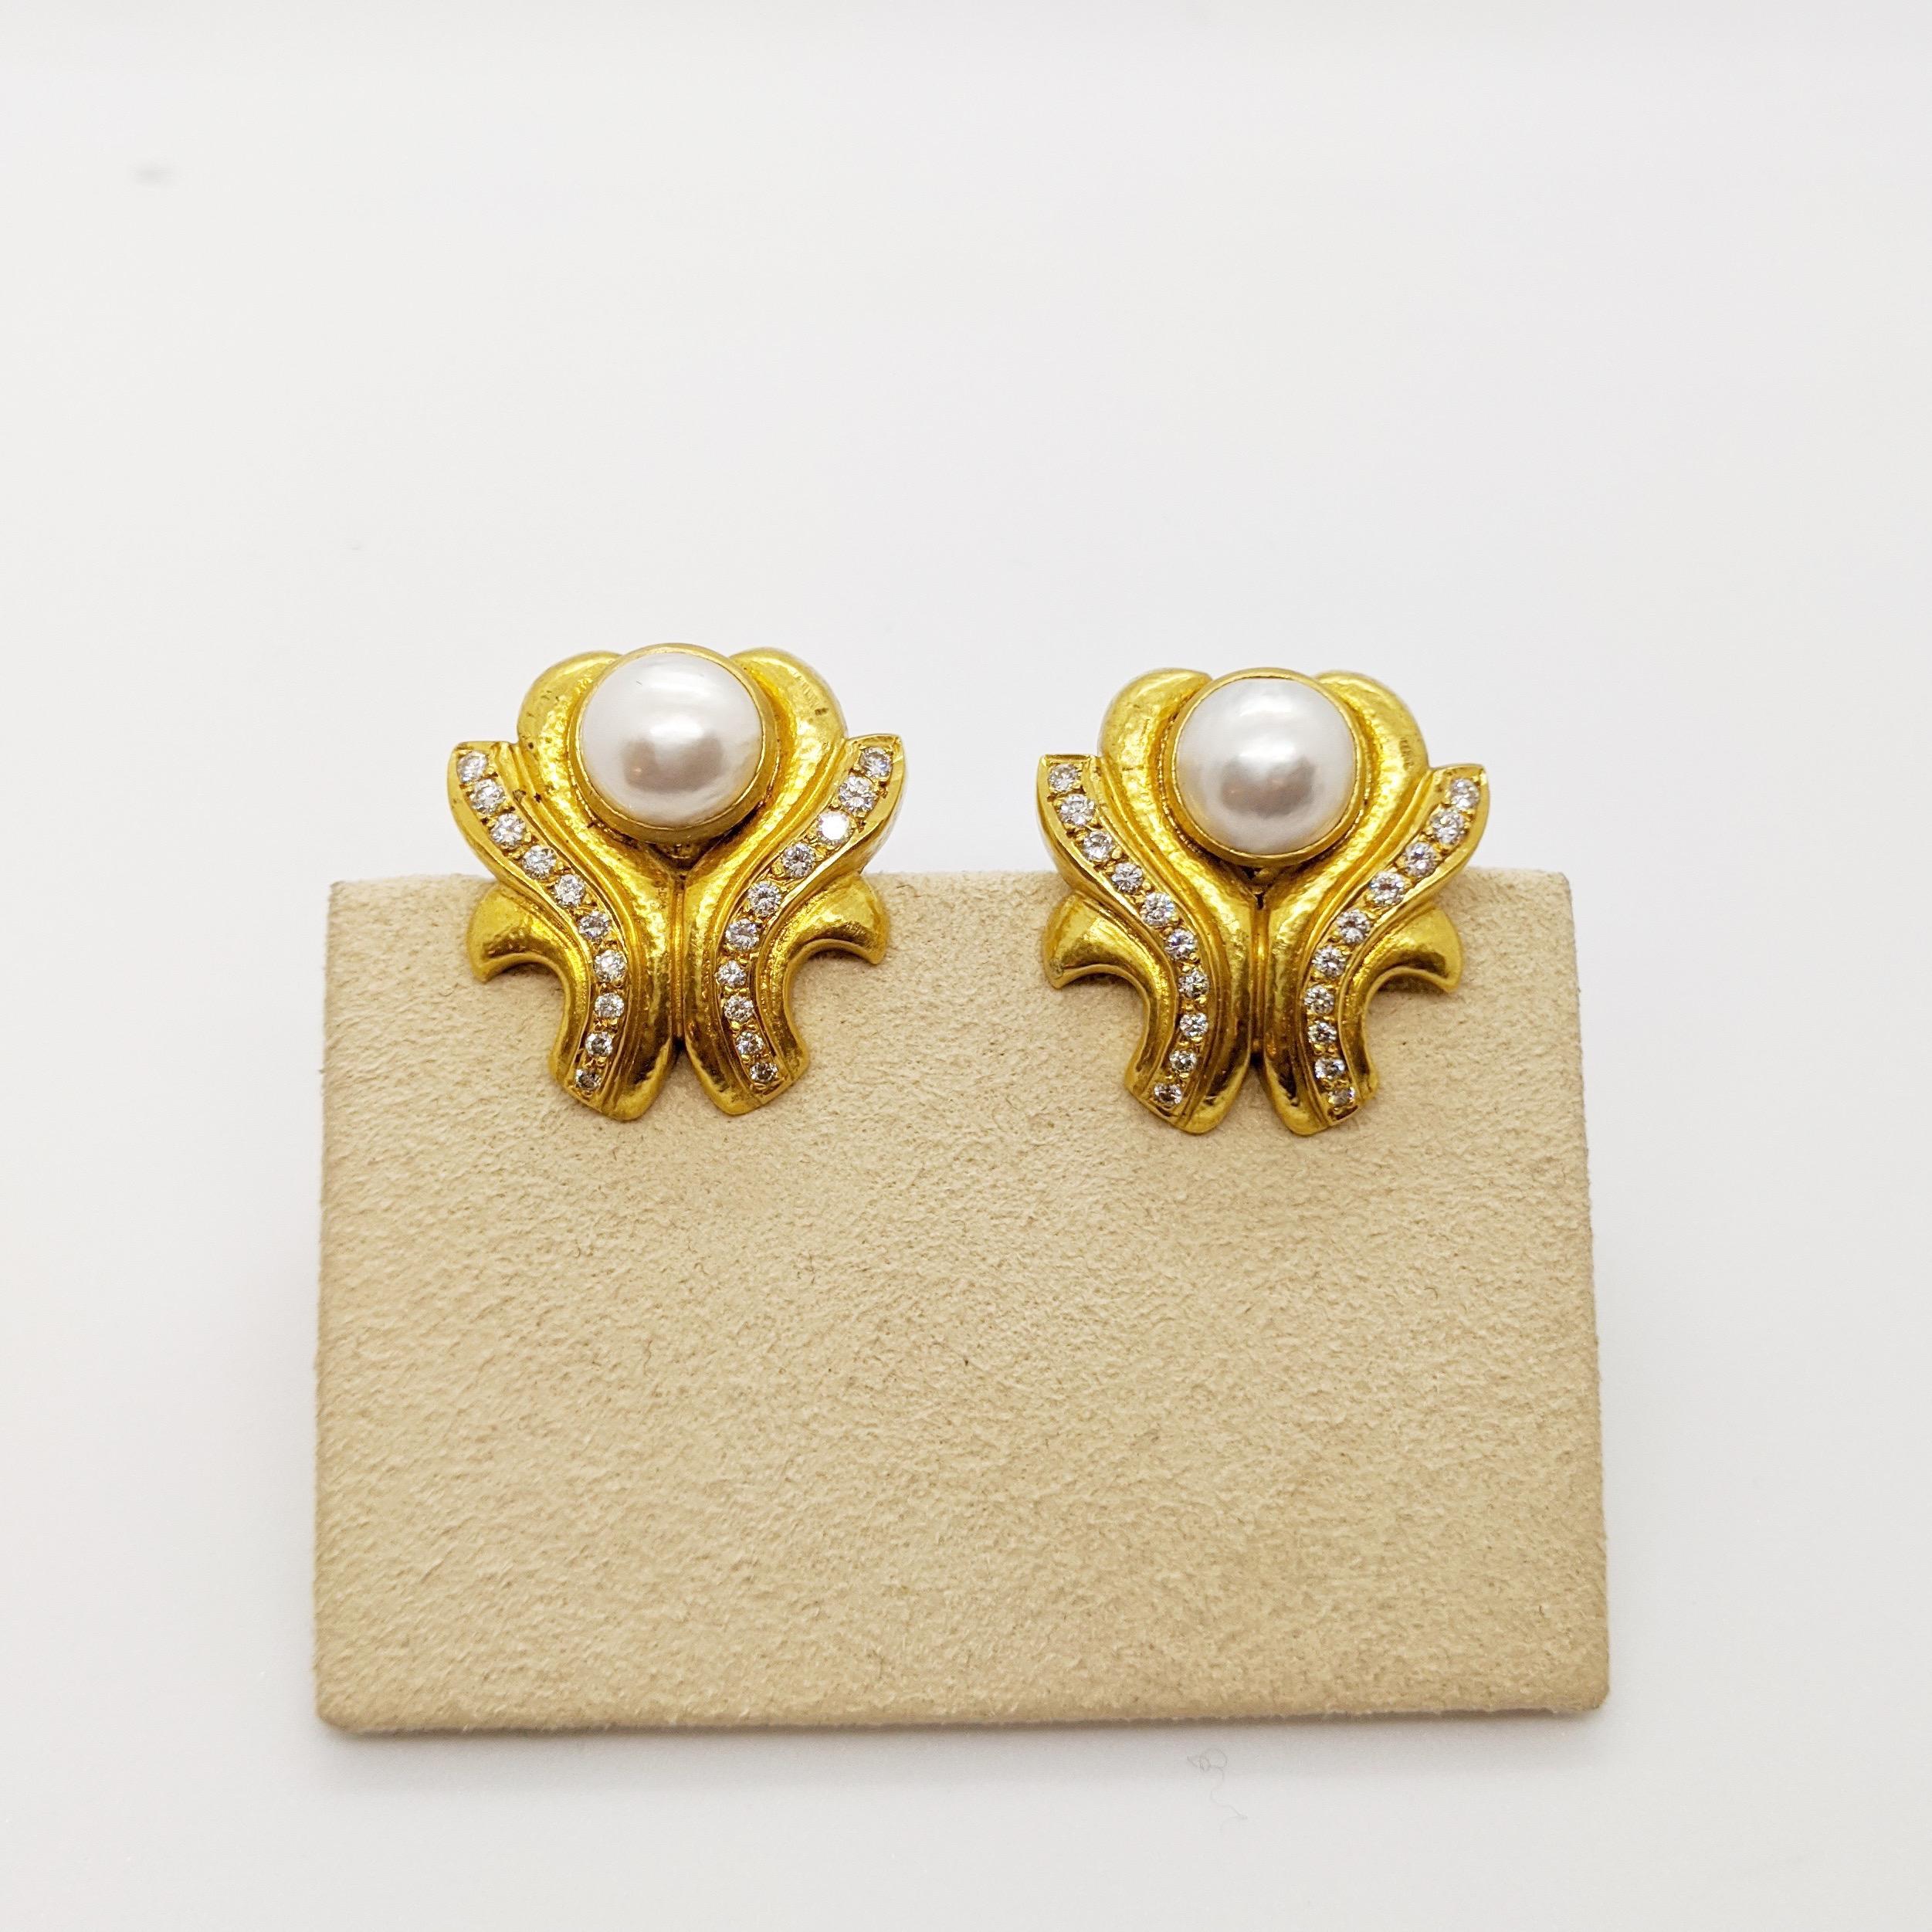 24 karat gold pearl earrings